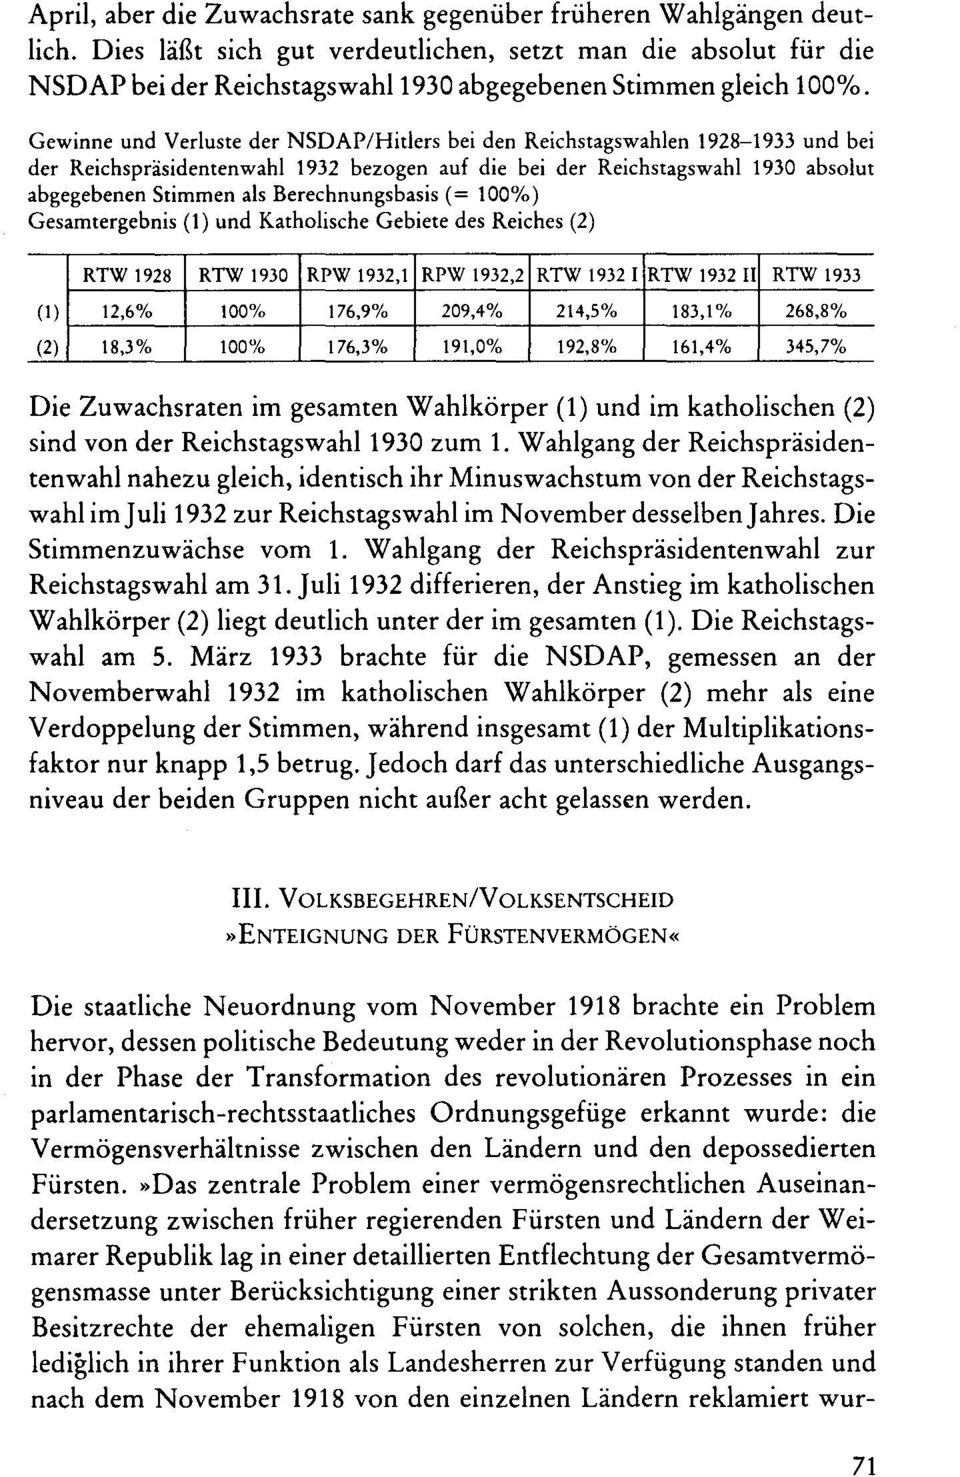 Gewinne und Verluste der NSDAP/Hitiers bei den Reichstagswahlen 1928-1933 und bei der Reichspräsidentenwahl 1932 bezogen auf die bei der Reichstagswahl 1930 absolut abgegebenen Stimmen als